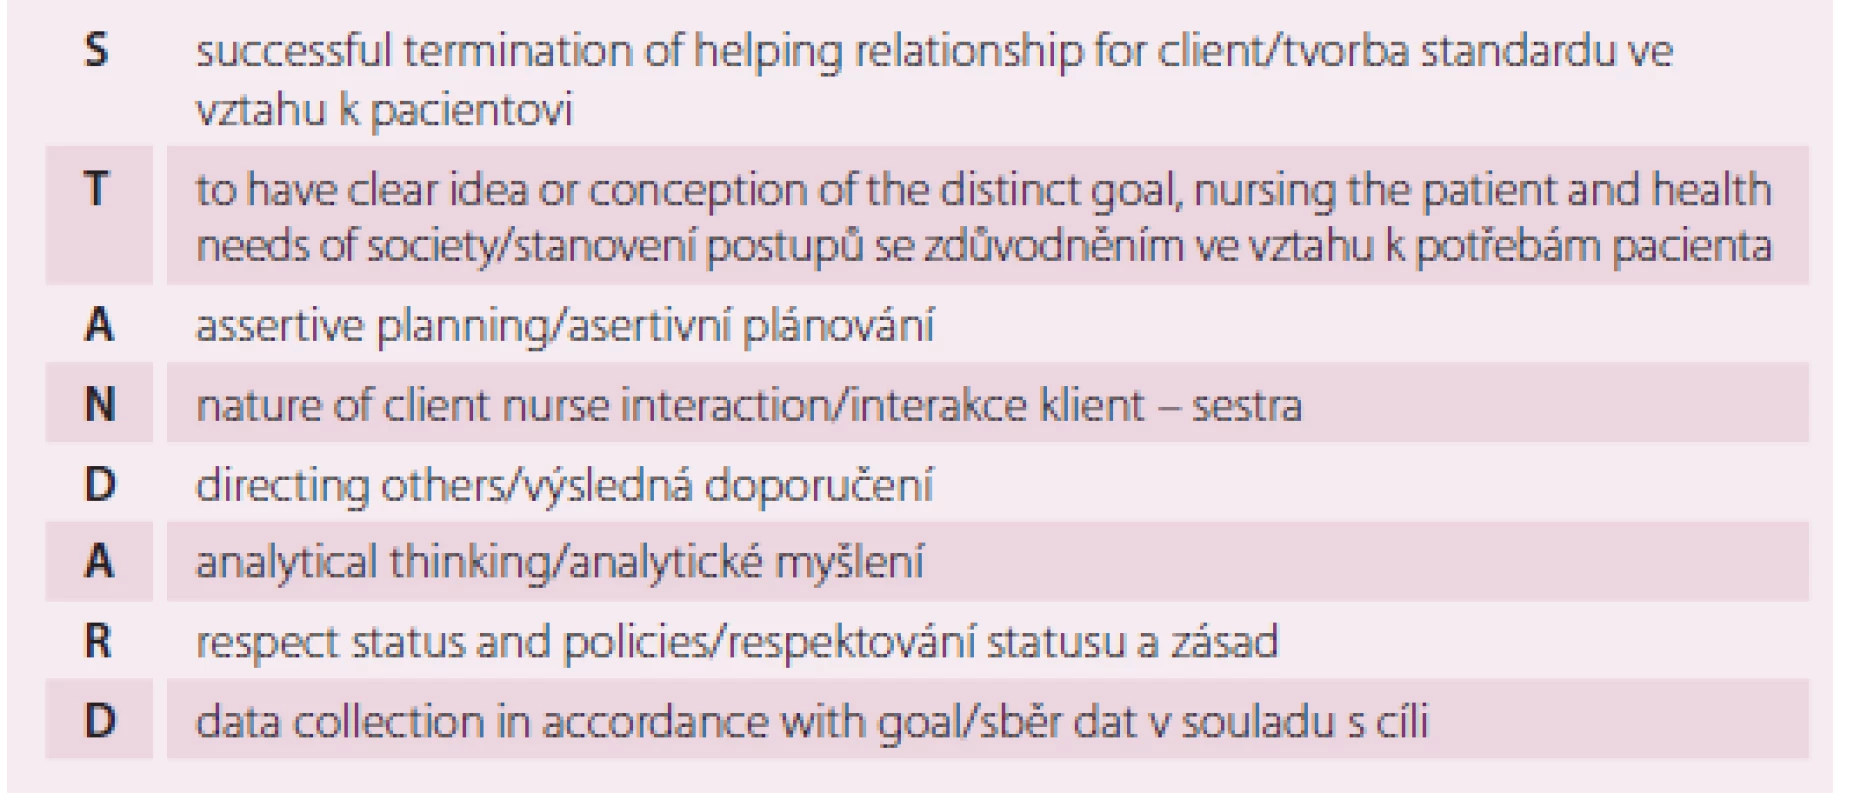 Tvorba standardu dle Standard nursing care: an asset (Danasu, 2007)